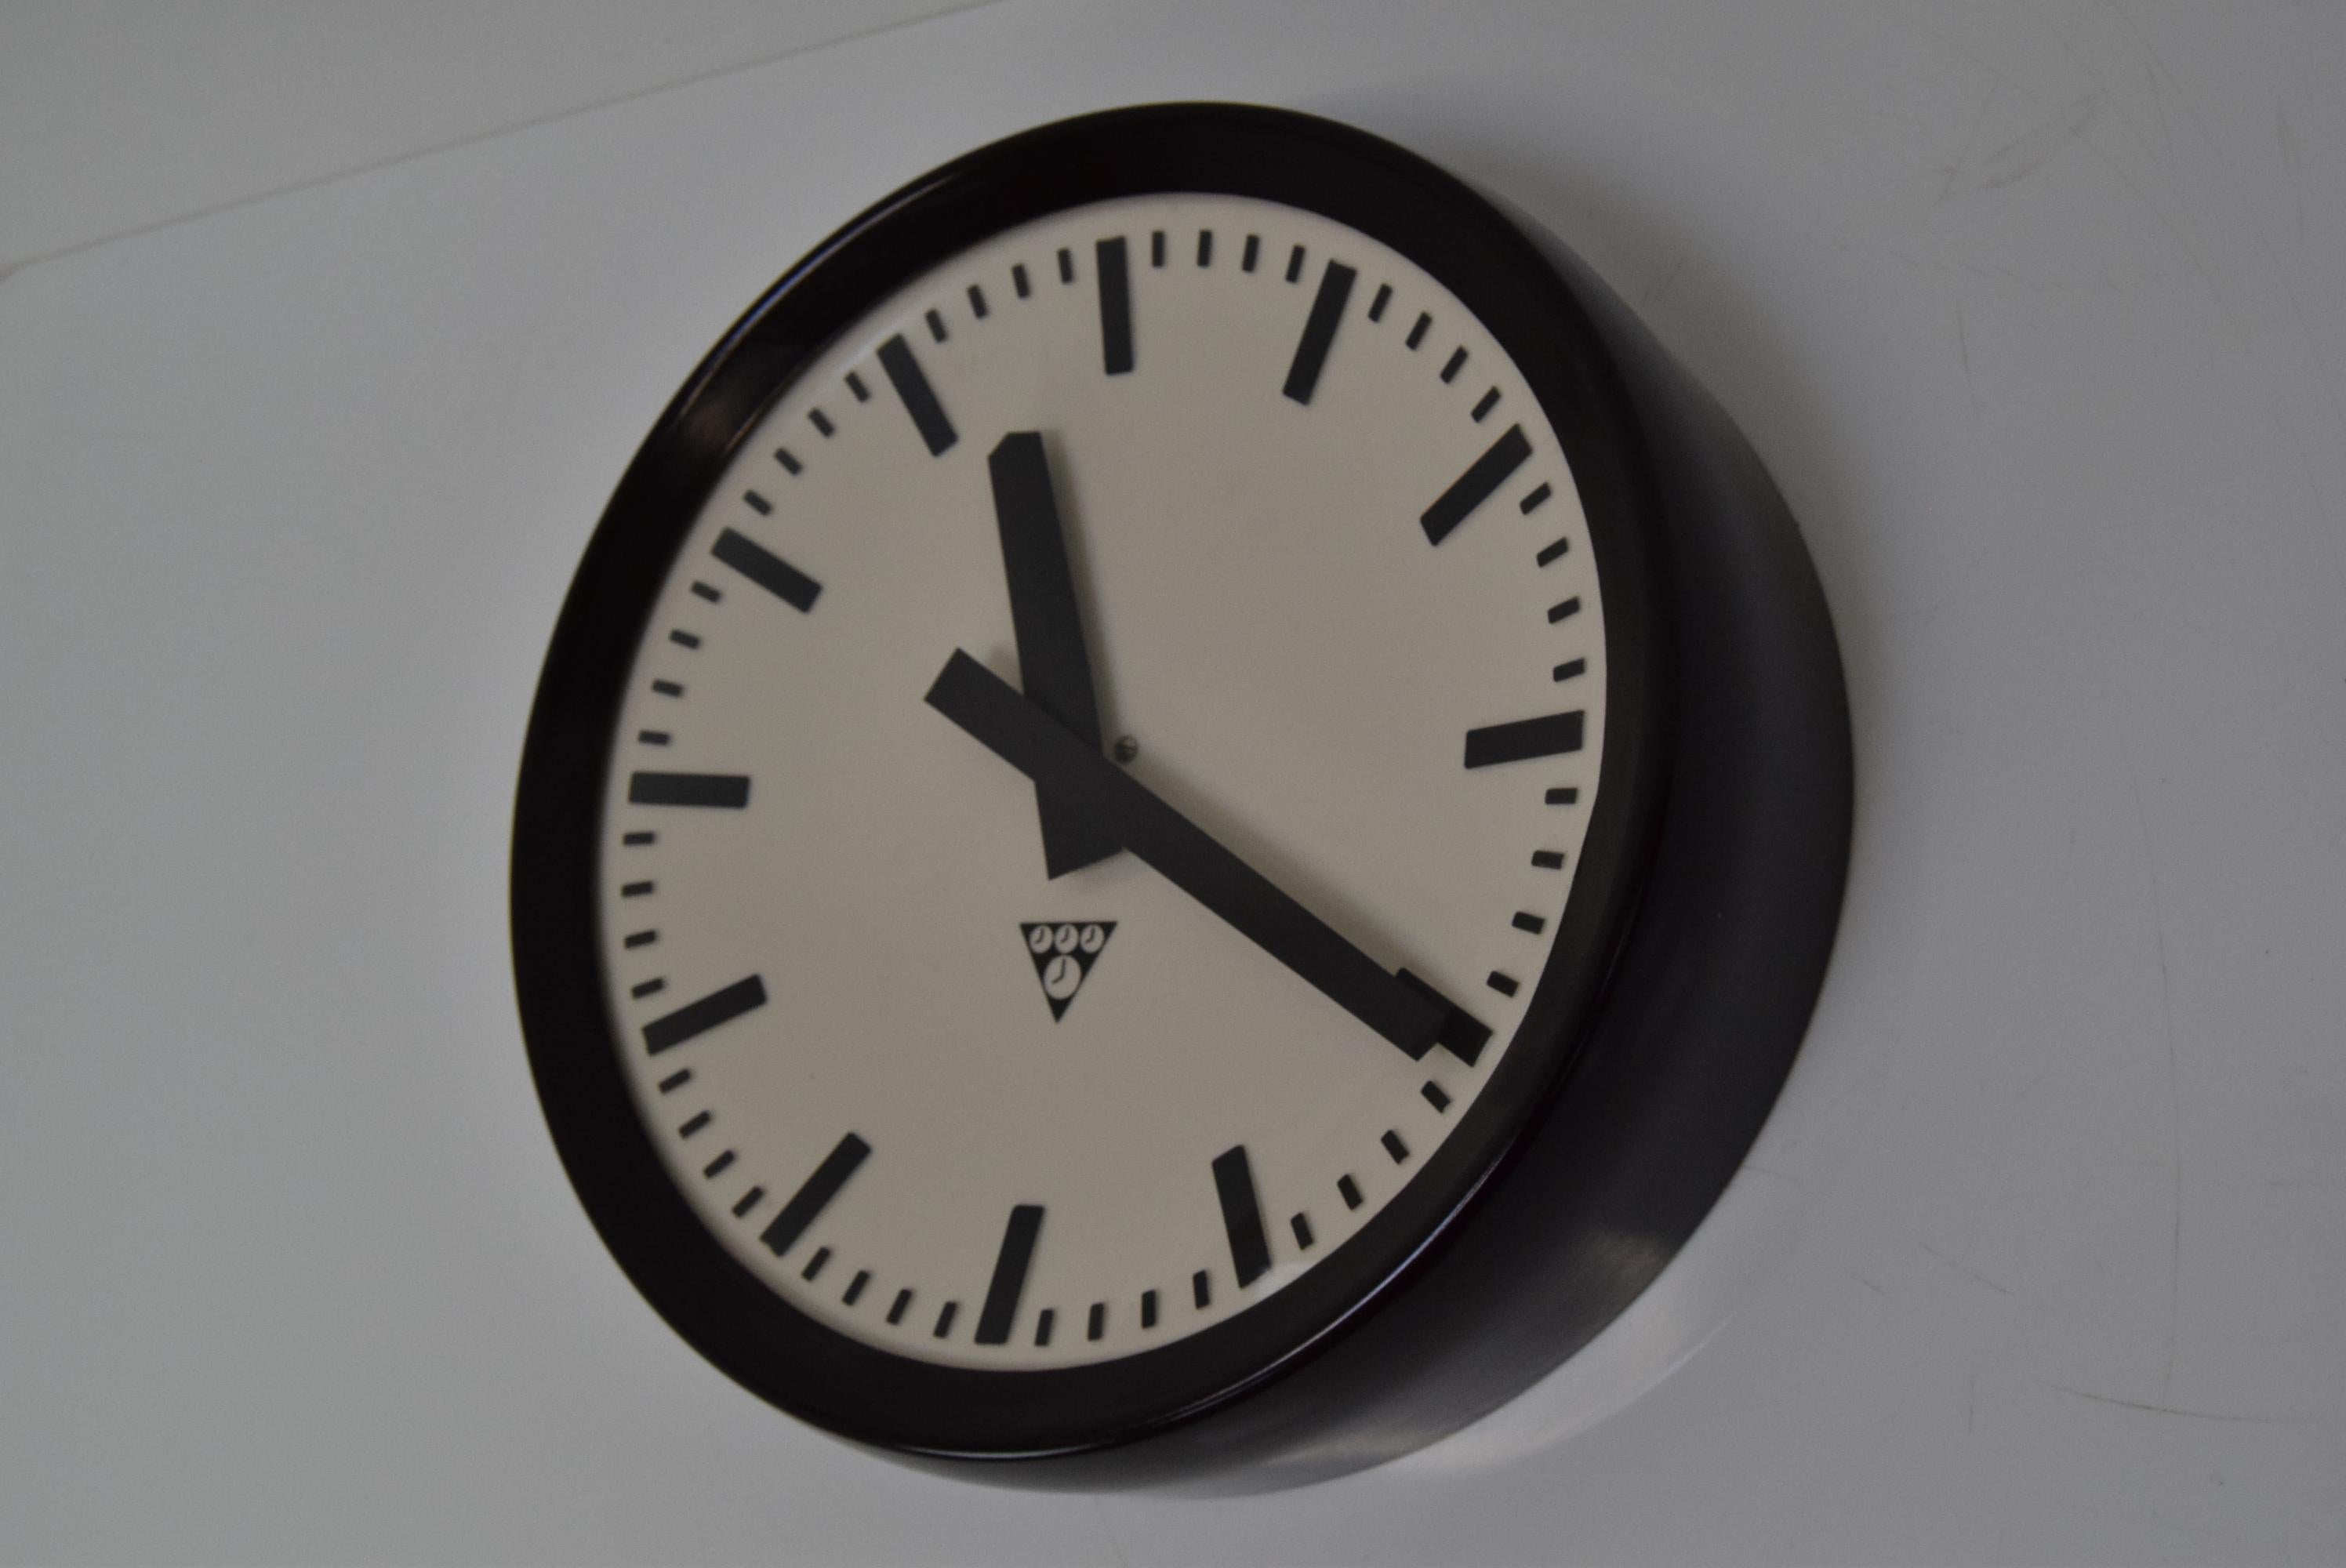 
Hergestellt in der Tschechoslowakei
Hergestellt aus Glas, Bakelit
Sie ist jetzt mit einem modernen Uhrwerk mit AA-Batterie ausgestattet.
Vollständig funktionsfähig
Guter Originalzustand